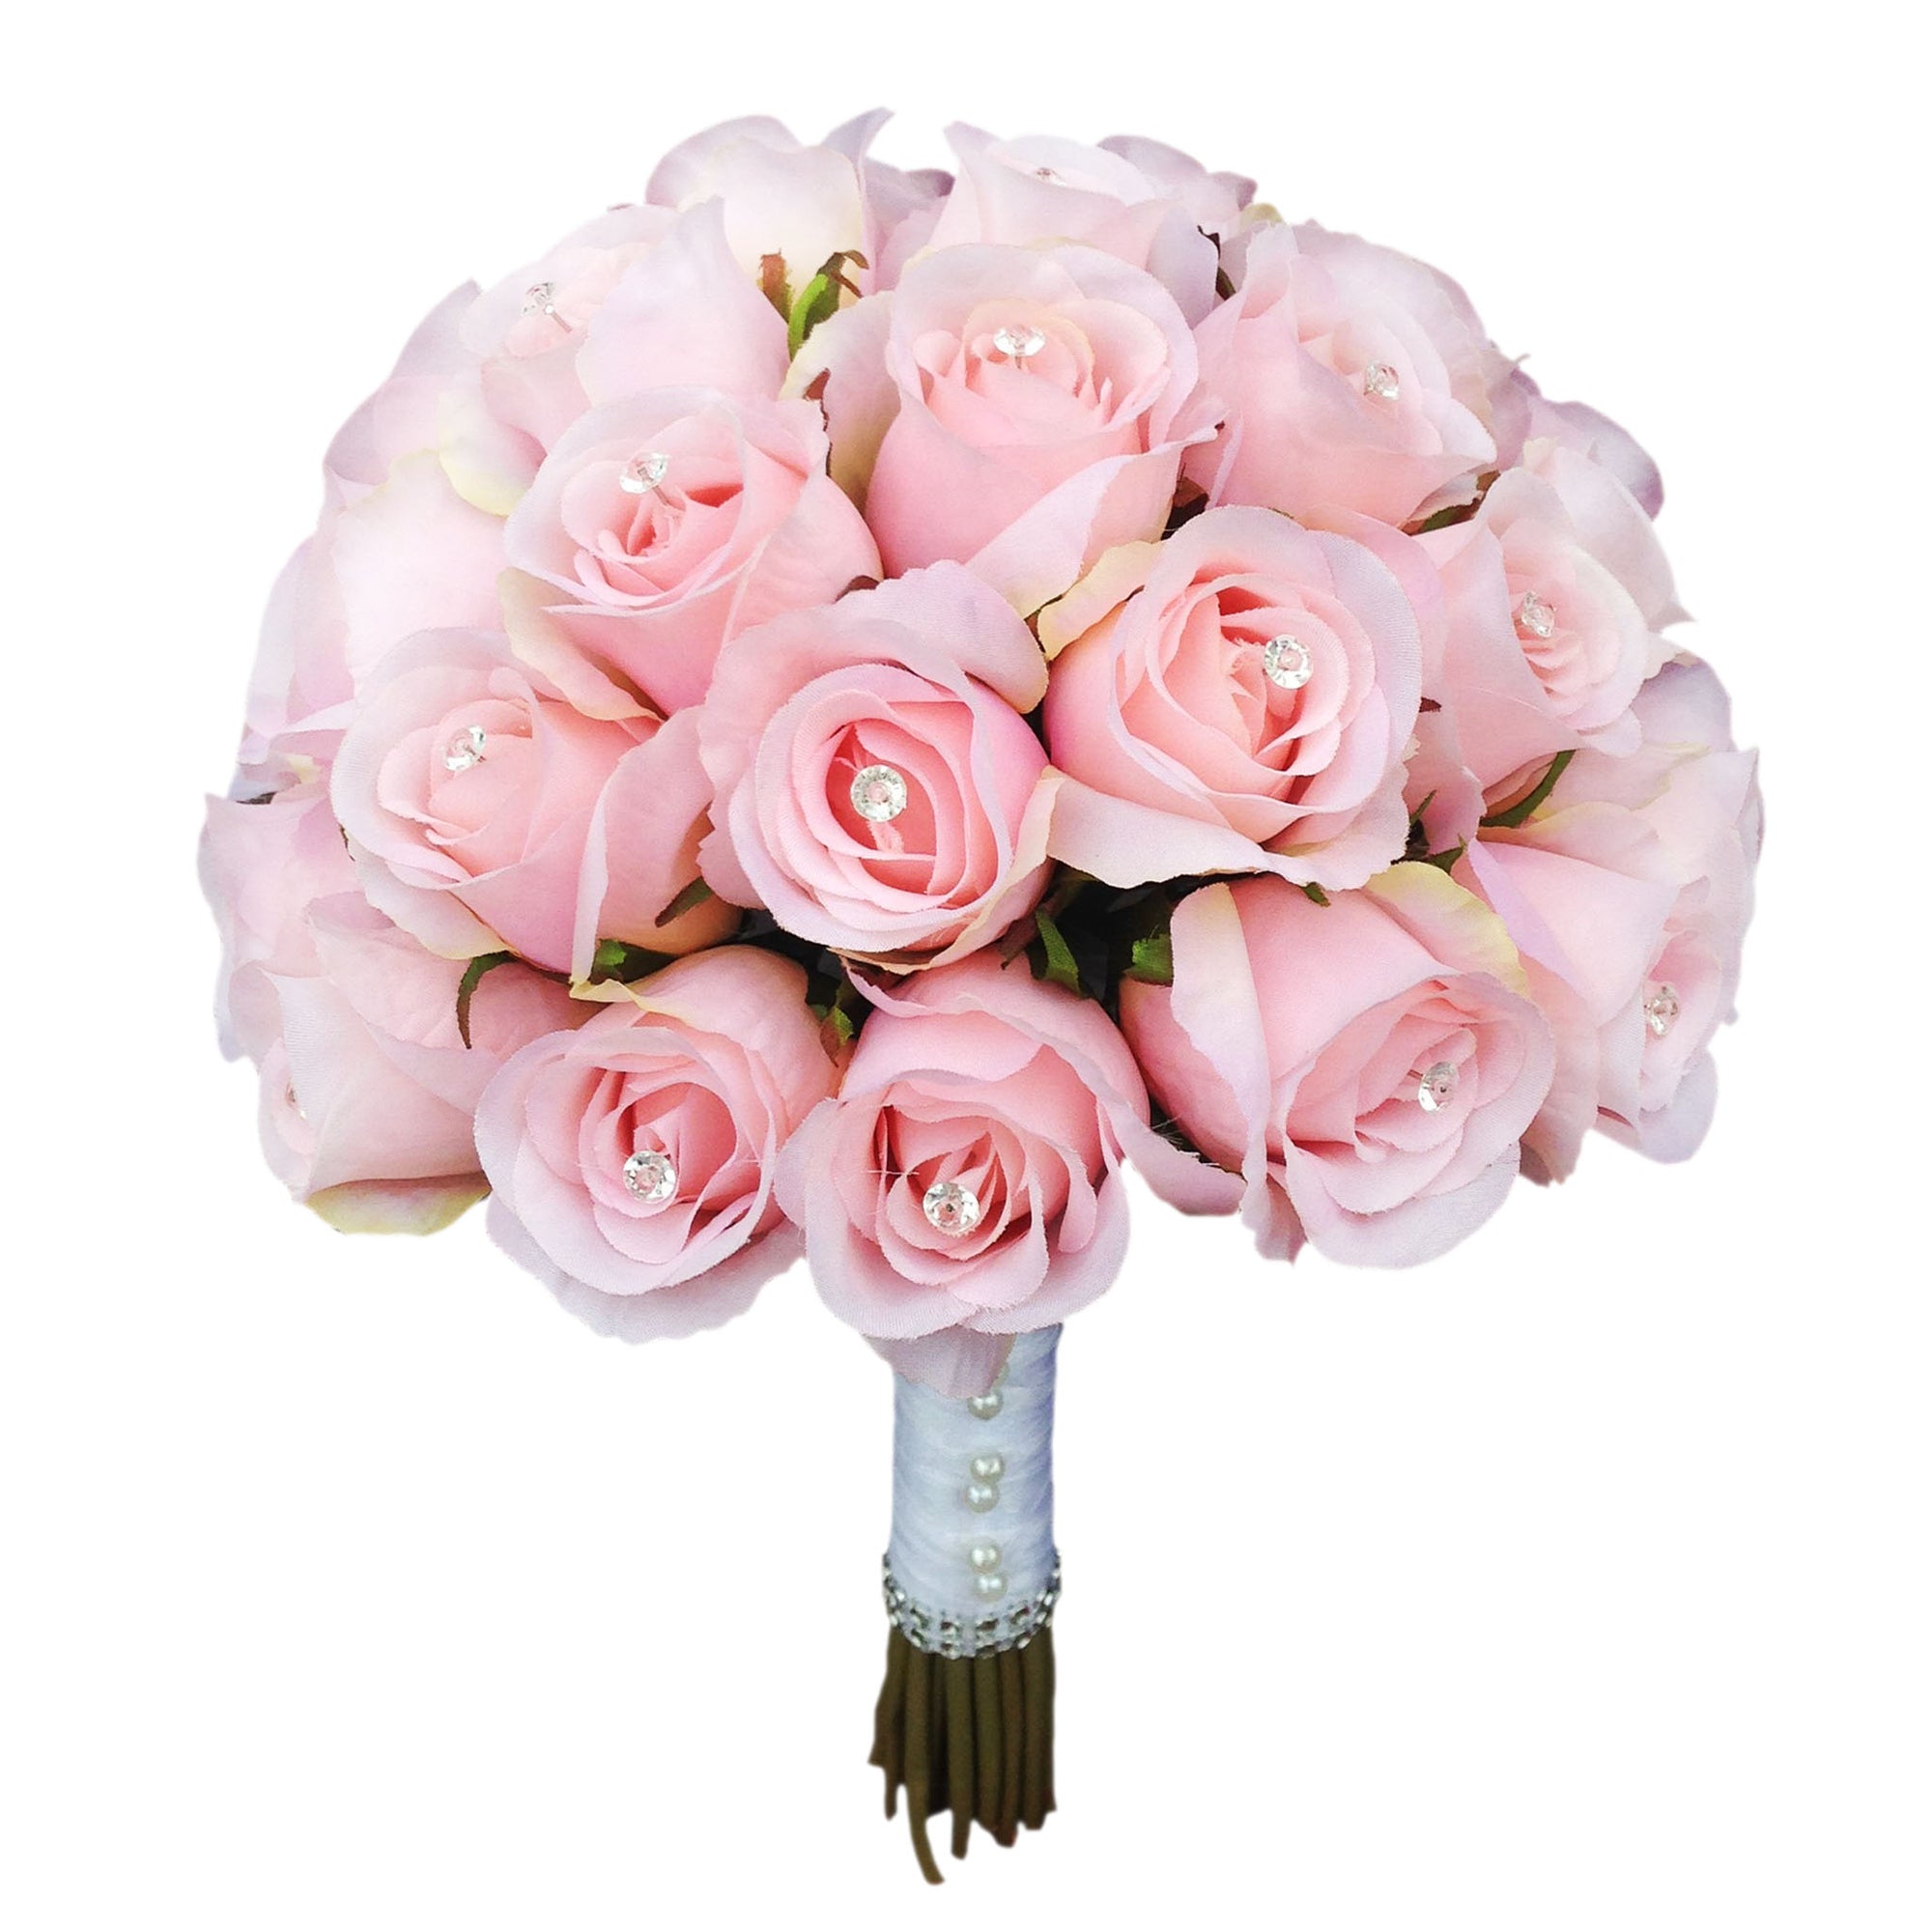 Periwinkle Silk Rose Flowers / Raindrops Wedding Flowers Bridal / Floral  Centerpiece Flower Arrangement Supplies Bridal Bouquet Roses 